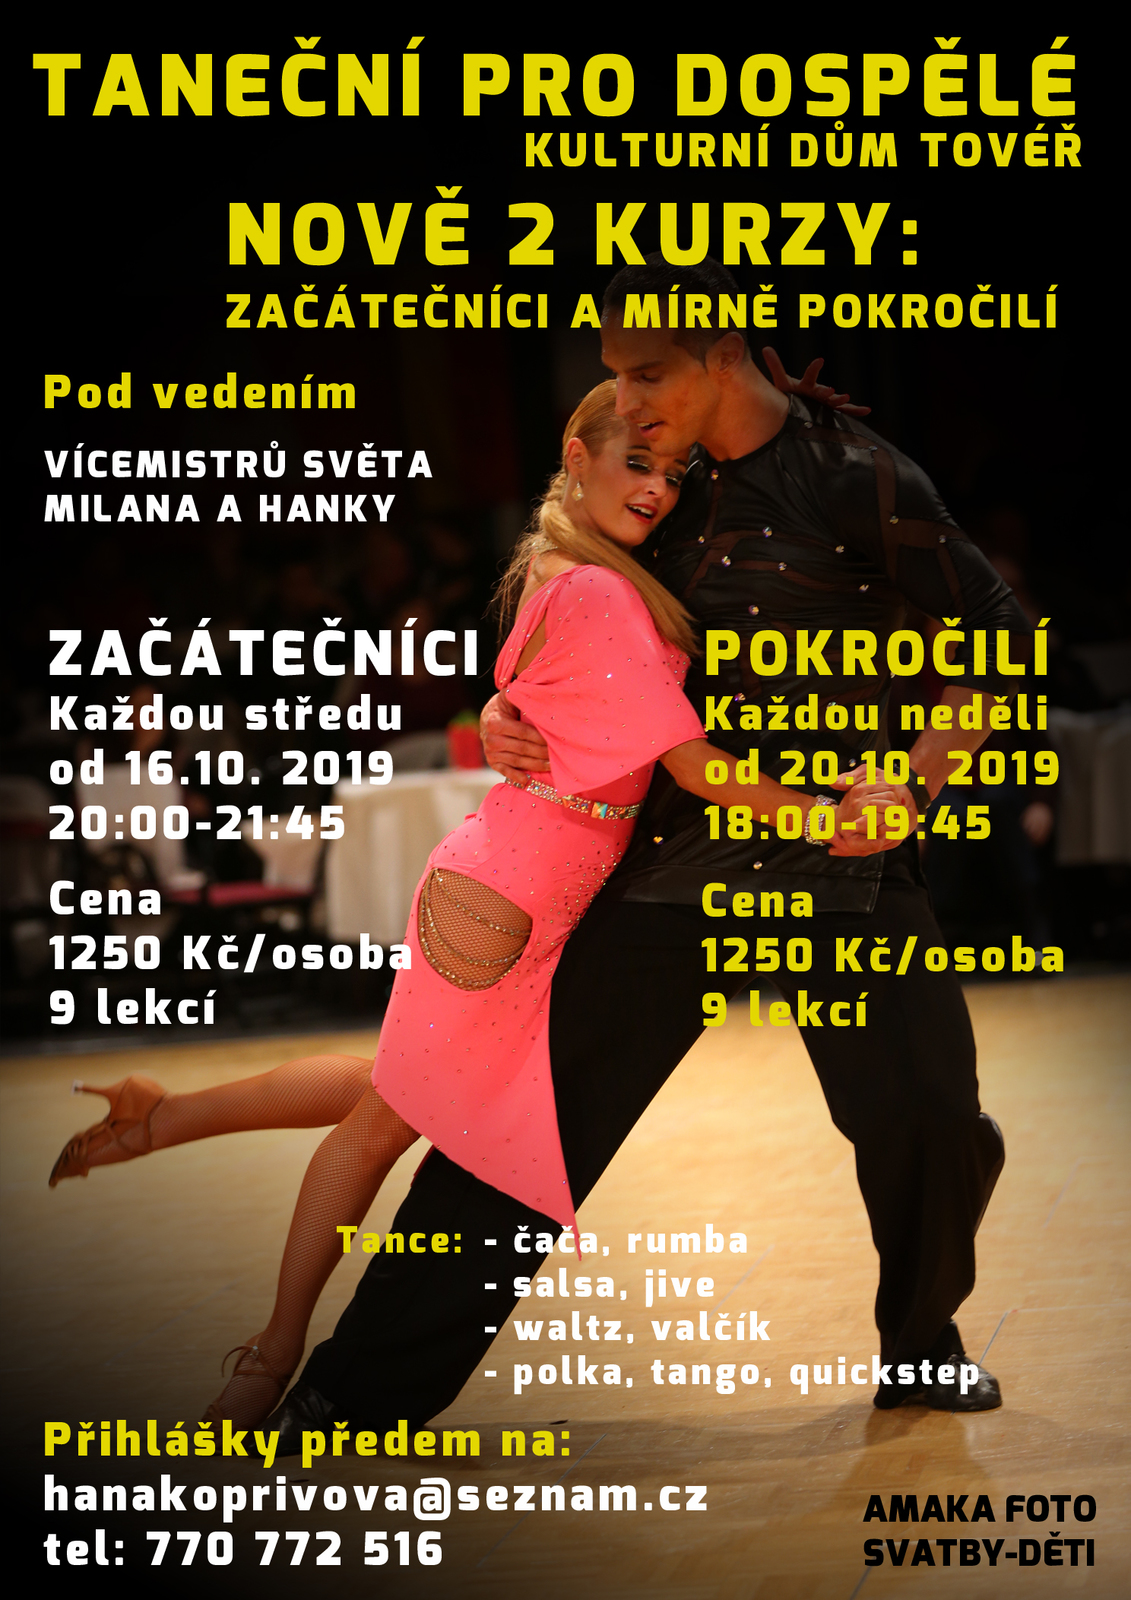 Taneční pro dospělé-Tovéř-září_dva kurzy 2019.jpg